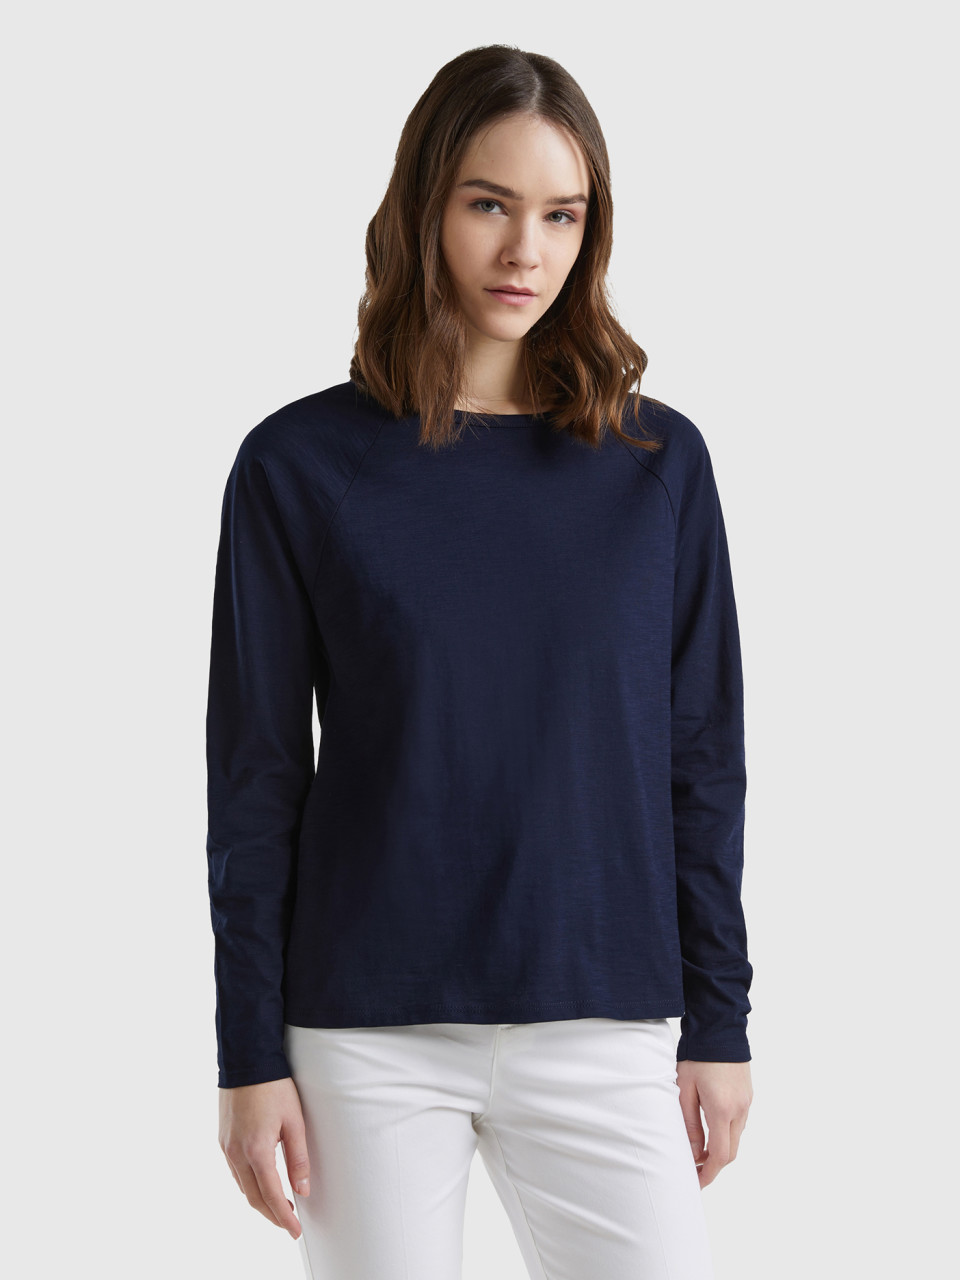 Benetton, Long Sleeve T-shirt In Light Cotton, Dark Blue, Women